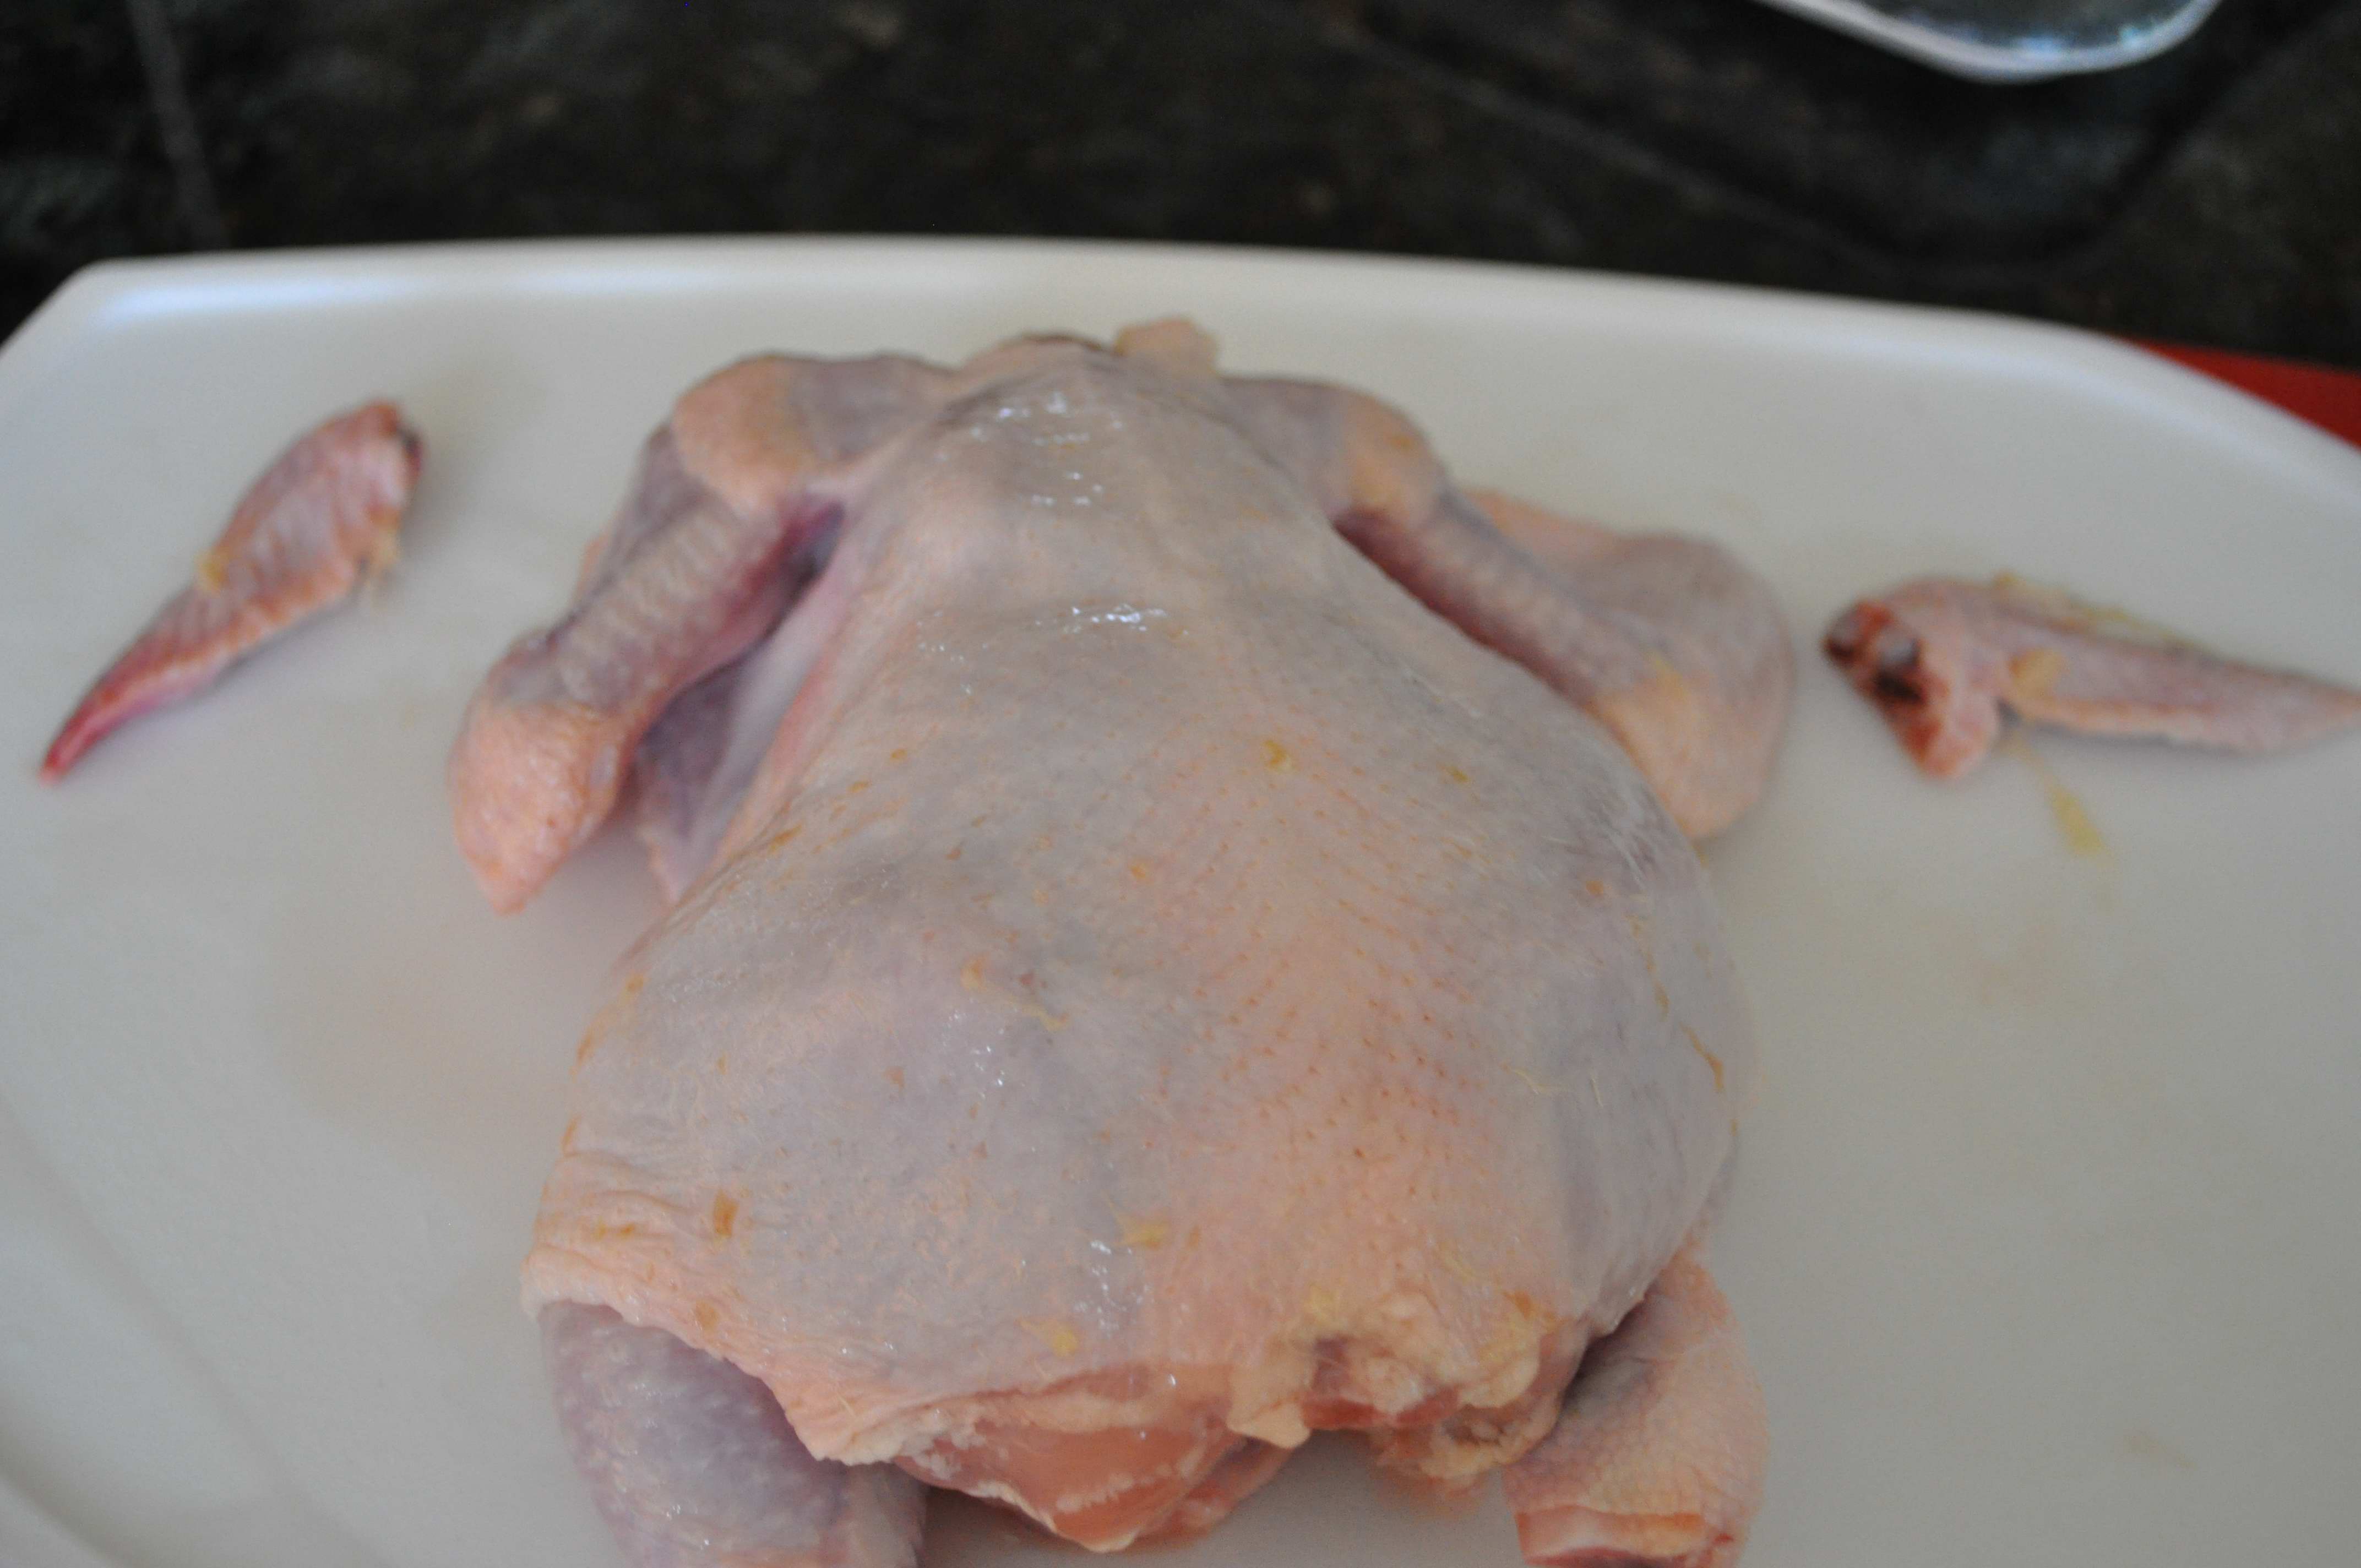 prepared chicken